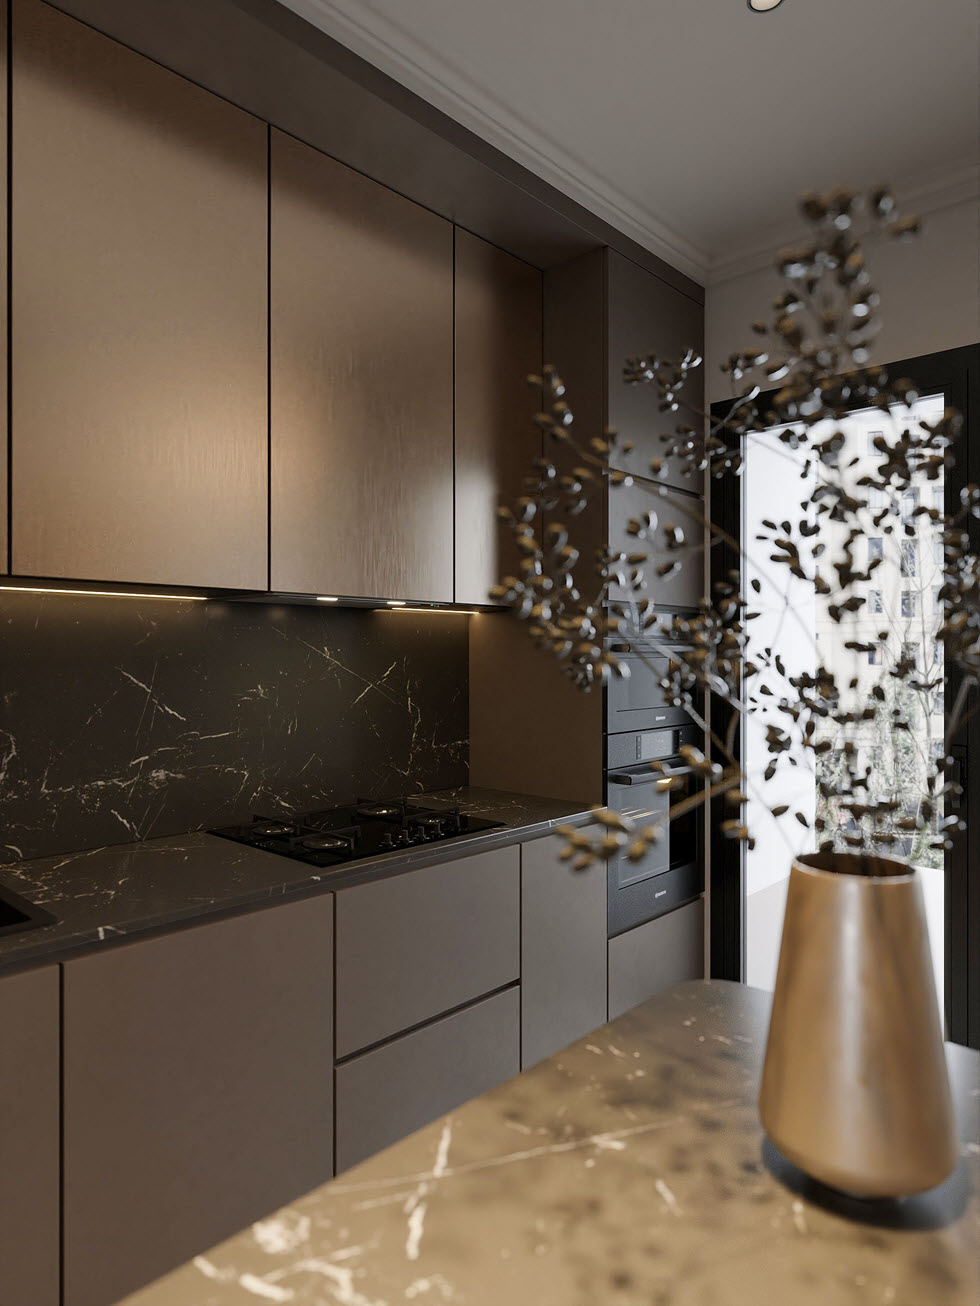 Không gian bếp được hoàn thiện với hệ tủ màu xám đen dạng cánh phẳng không tay nắm càng tôn thêm nét sang trọng cho căn phòng.